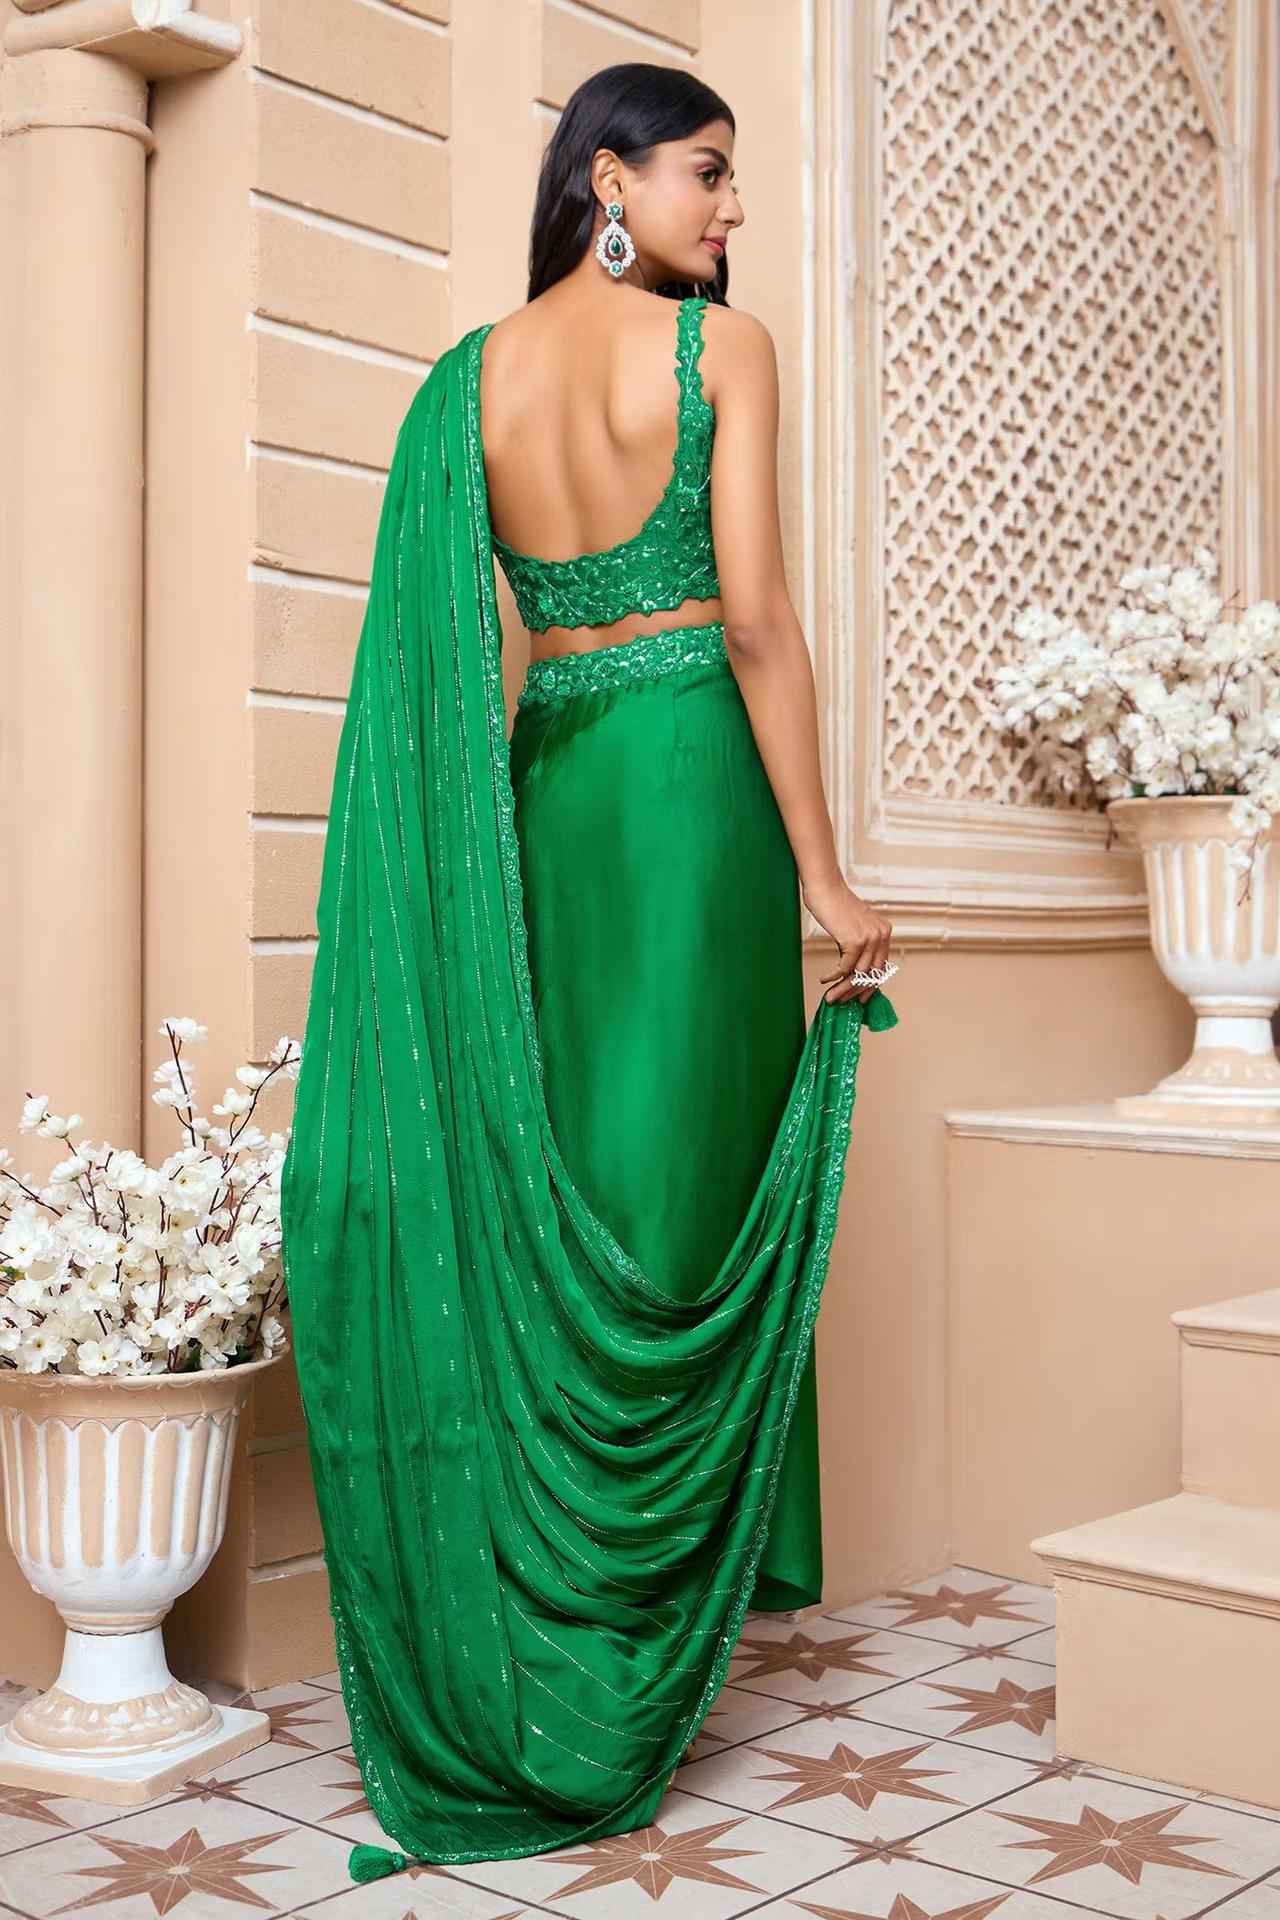 Areeqa Haq Ki 14 Fed Wali Video Green Dress | TikTok